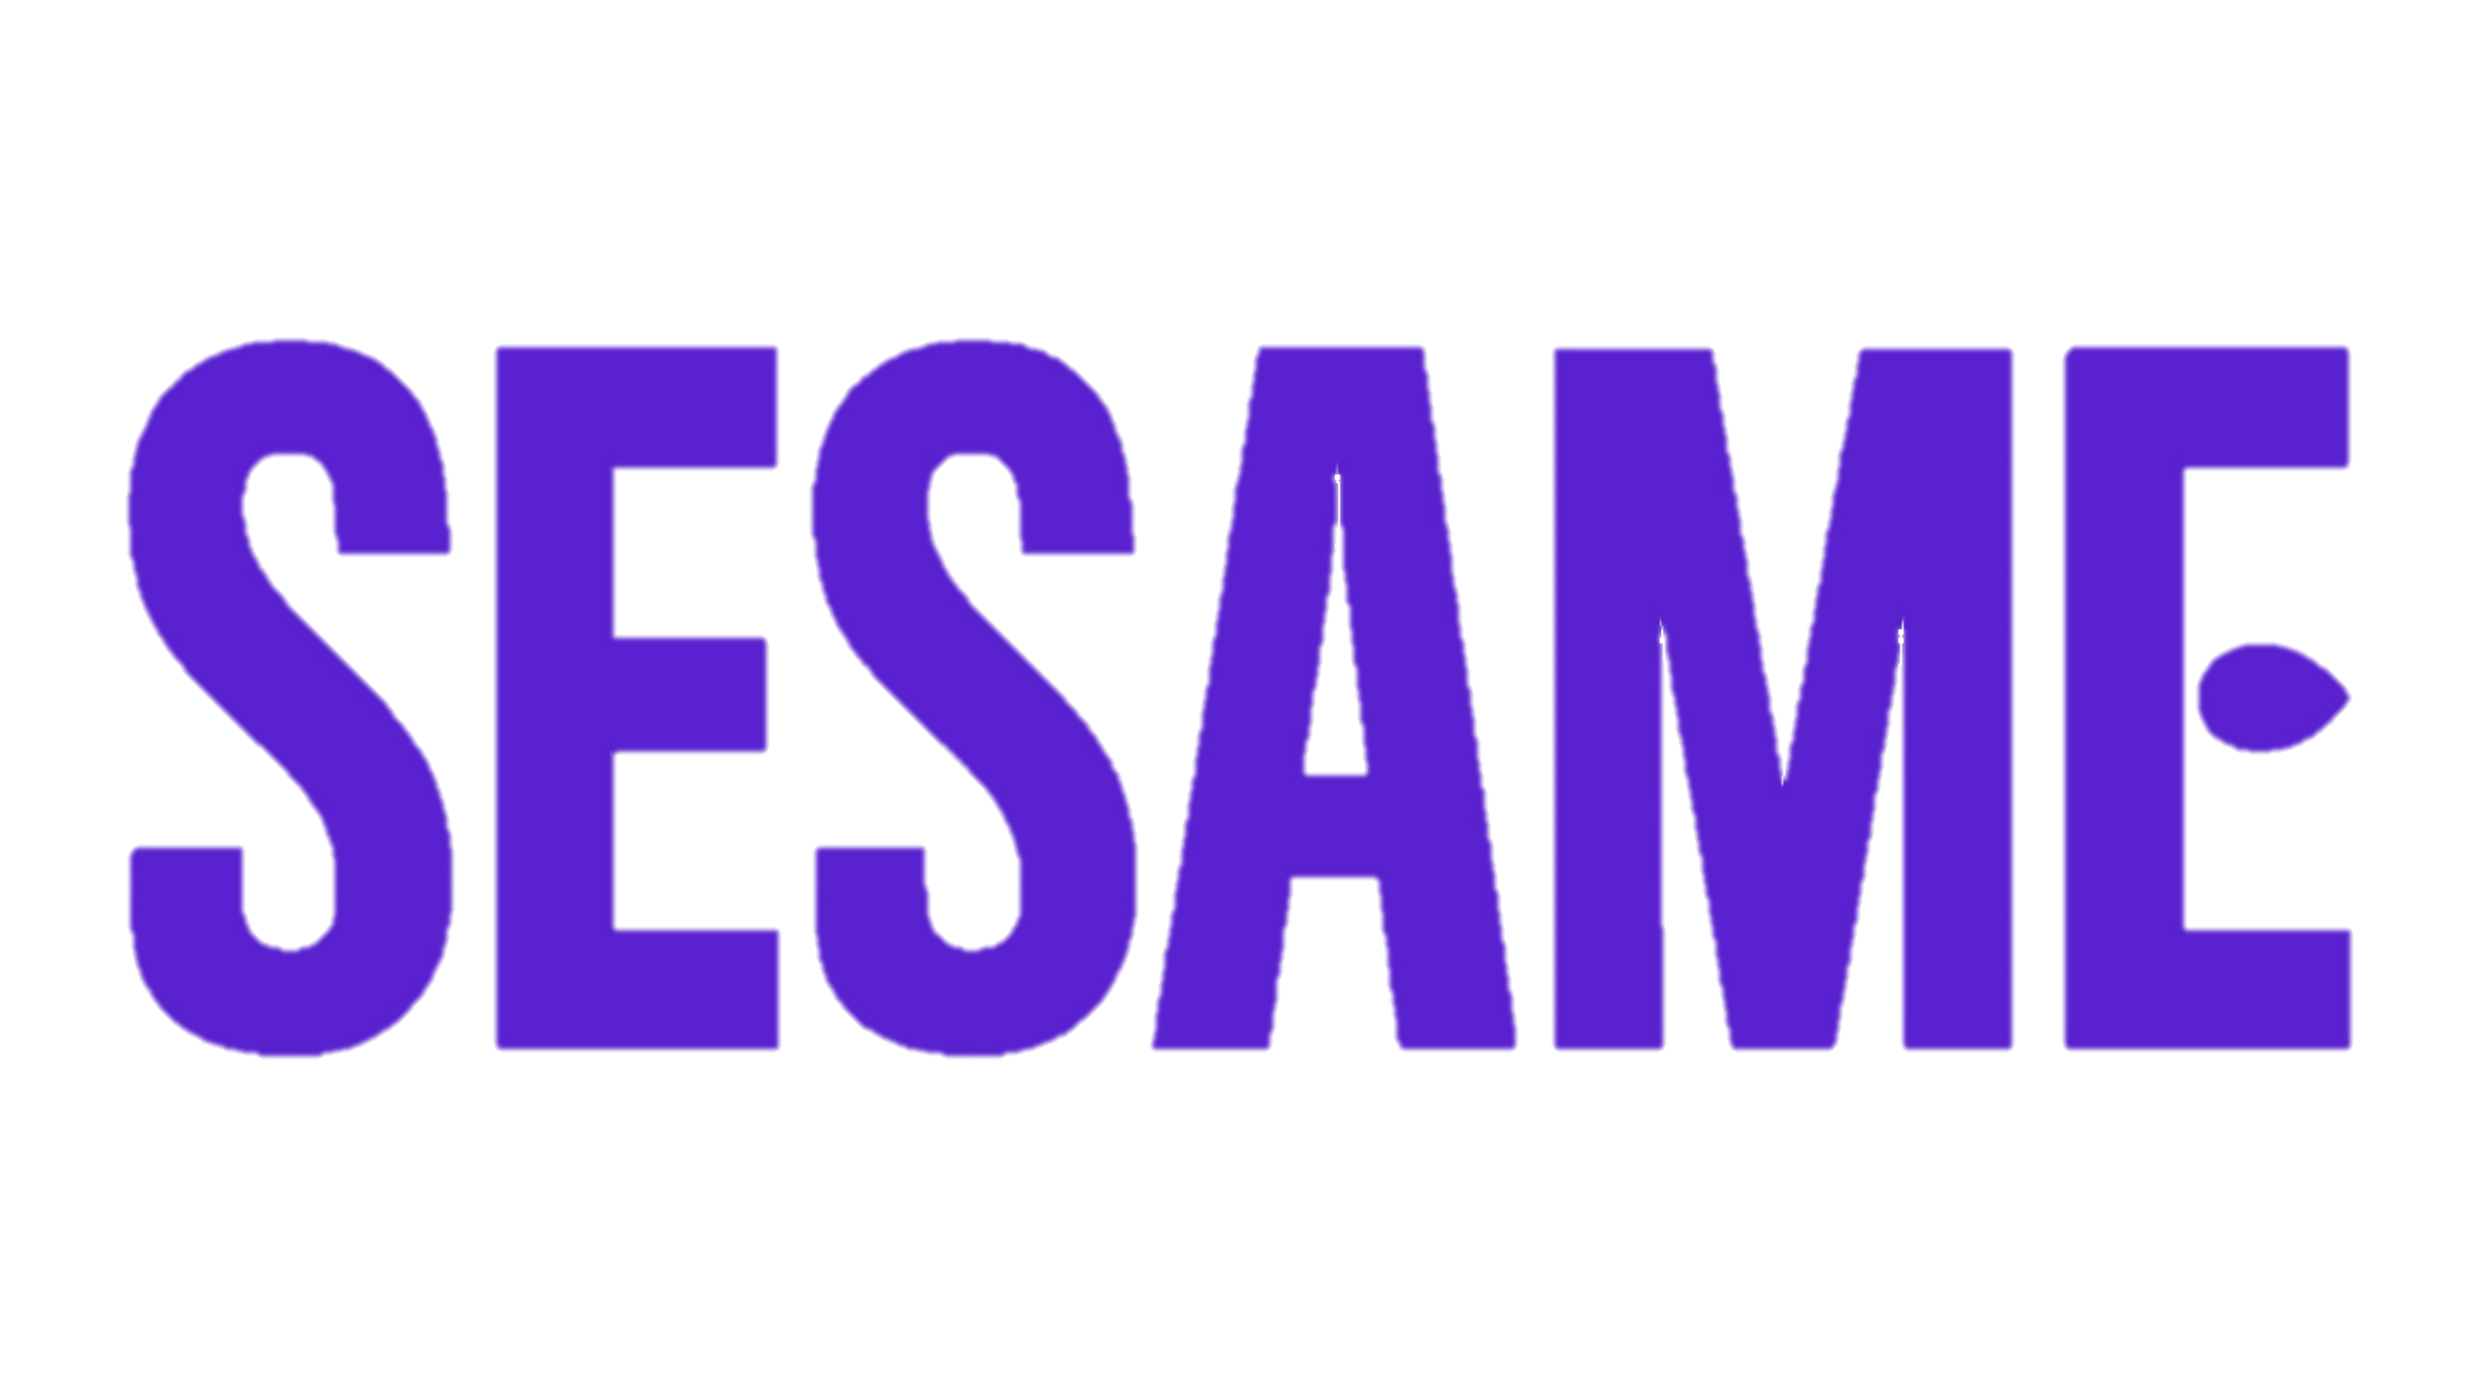 Sesame logo transparent